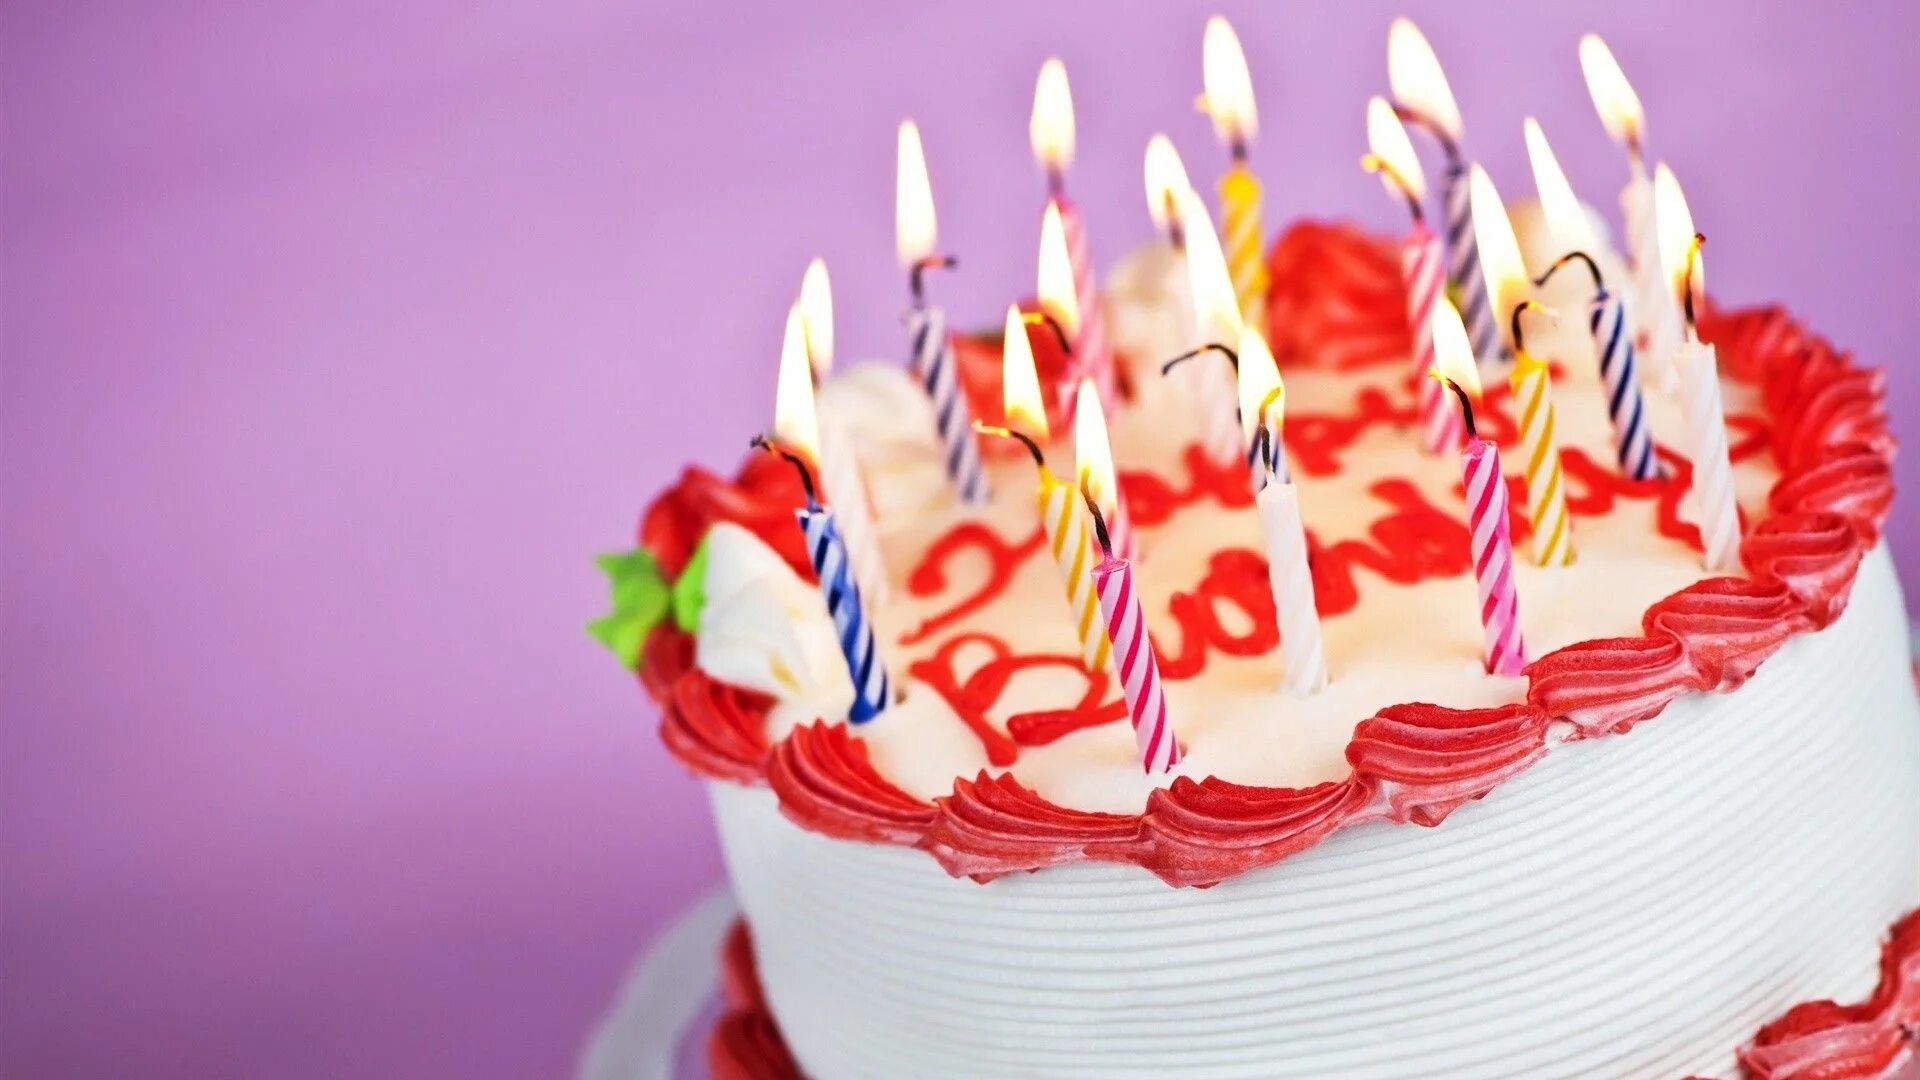 A birthday. Торт с днем рождения!. Свечи для торта. Открытка с днём рождения торт. Торт со свечками.